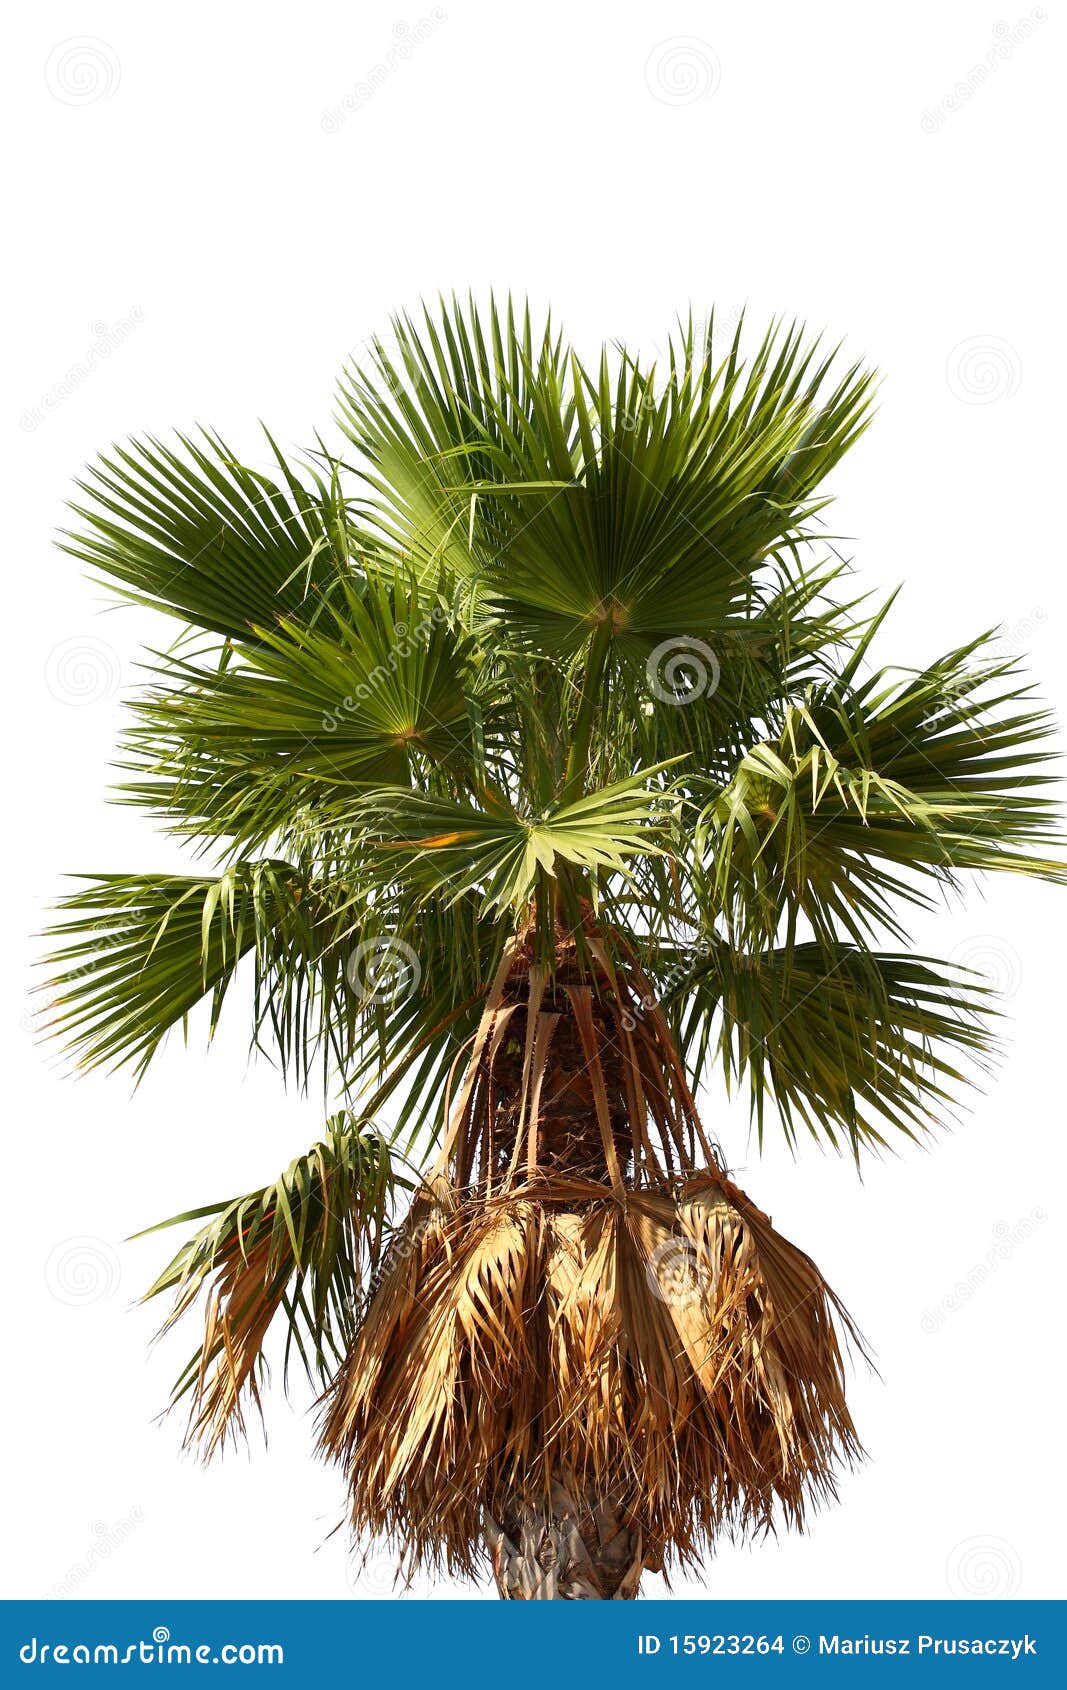 beautiful palm tree